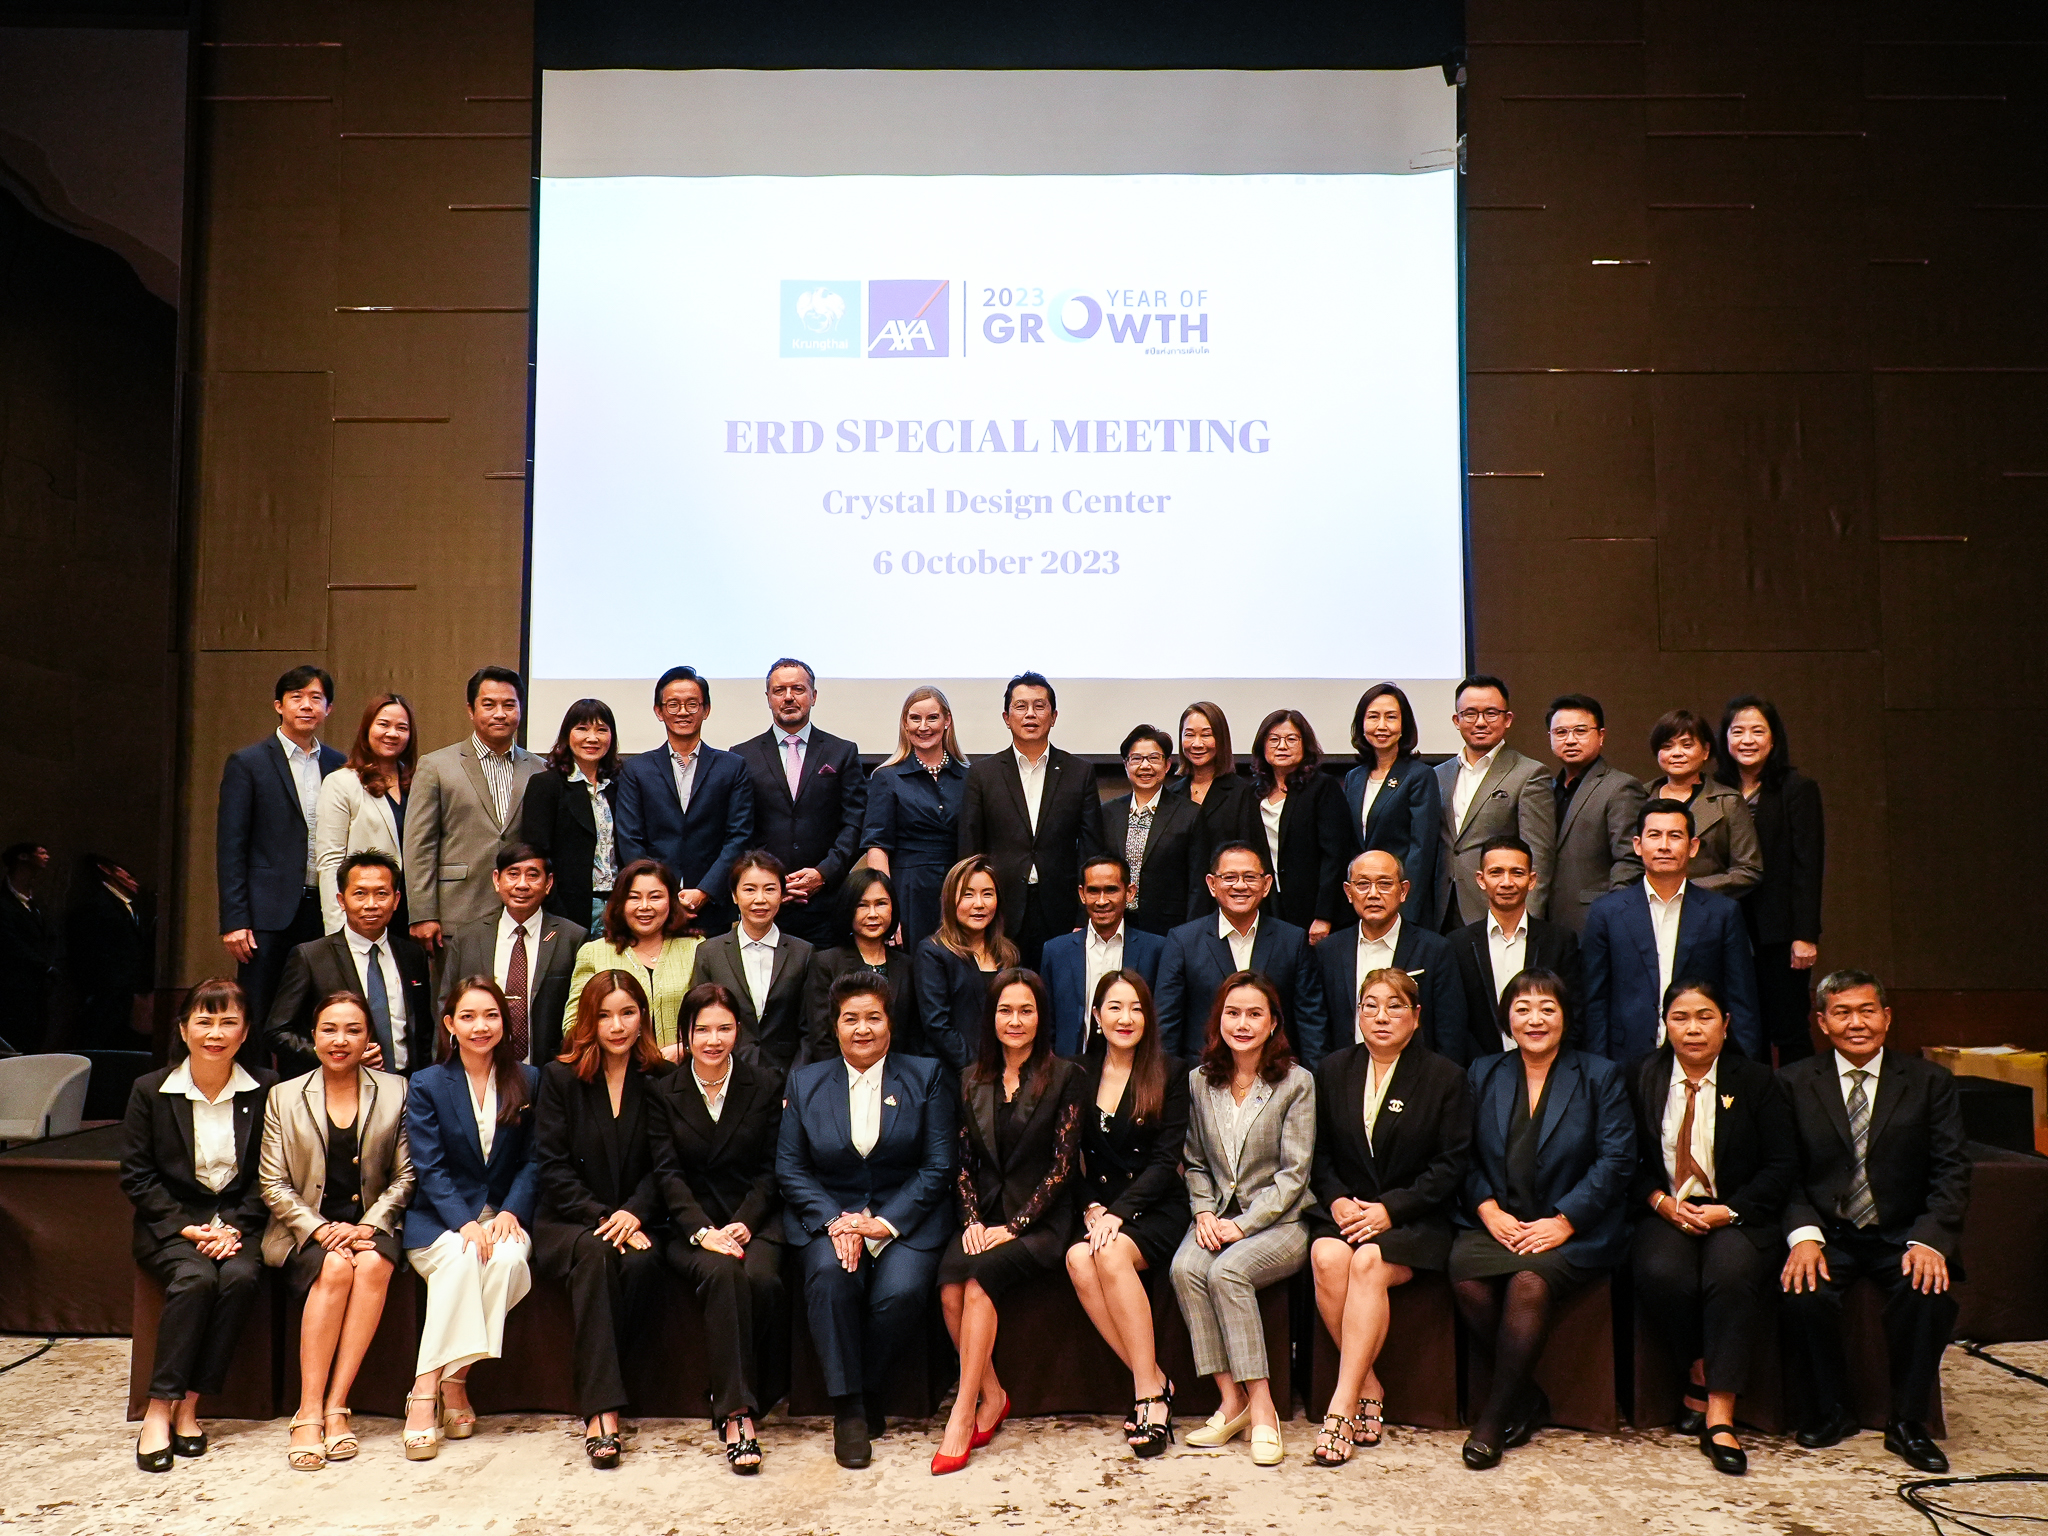 กรุงไทย-แอกซ่า ประกันชีวิต จัดงาน  ERD Special Meeting หนุนฝ่ายขายให้ก้าวสู่ความสำเร็จที่ยั่งยืน